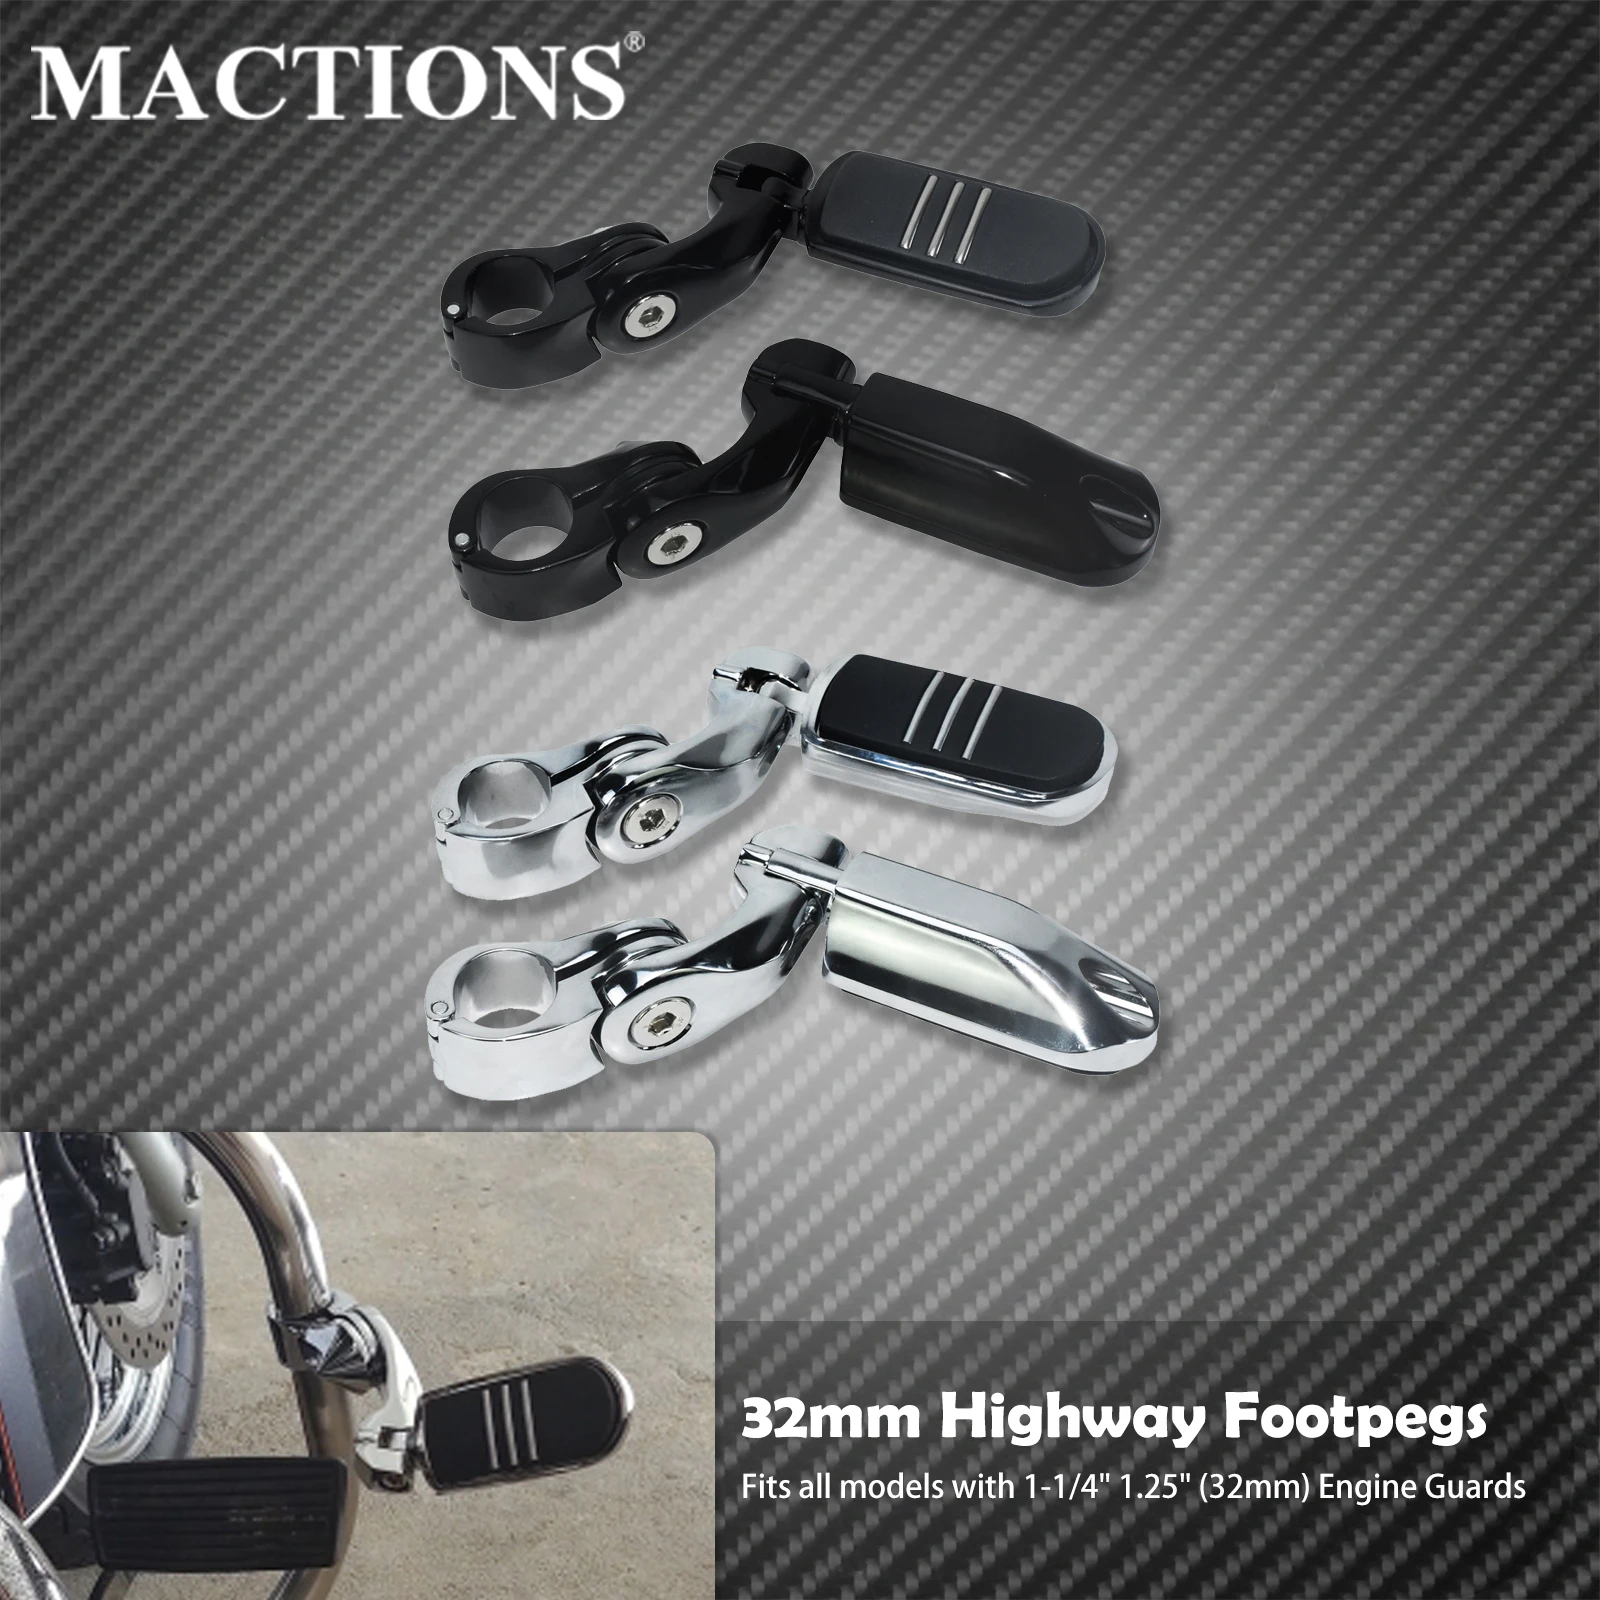 

Мотоциклетные педали для шоссе, подножки, подножки, 32 мм, 1-1/4 дюйма, комплекты креплений для подножки, универсальные подножки для Harley Touring Sportster Softail Dyna